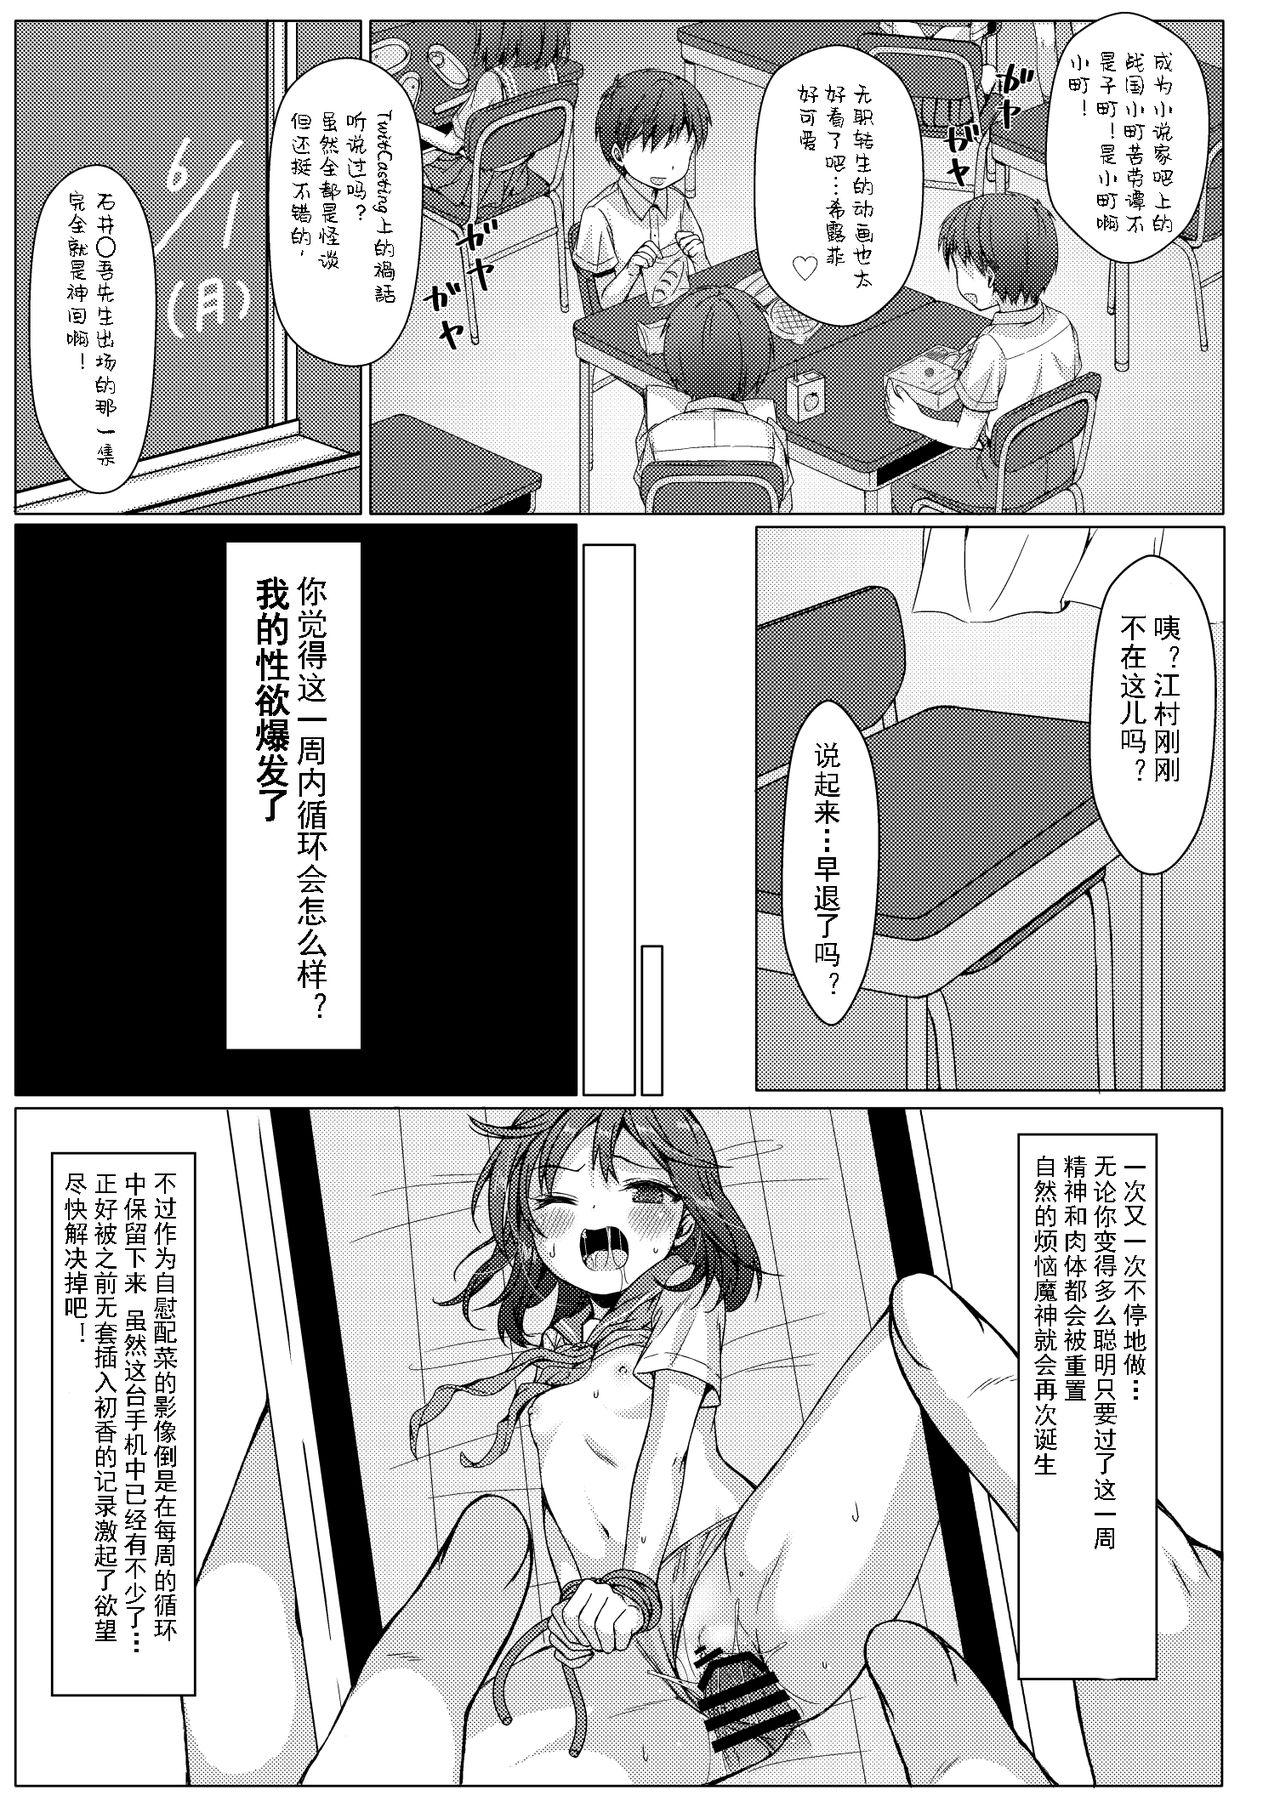 Boob Isshuukan de Mugen Loop Shiteru to Kigatsuita kara, Kounai ni Yaribeya Tsukutta! 2 - Original Cheating - Page 3